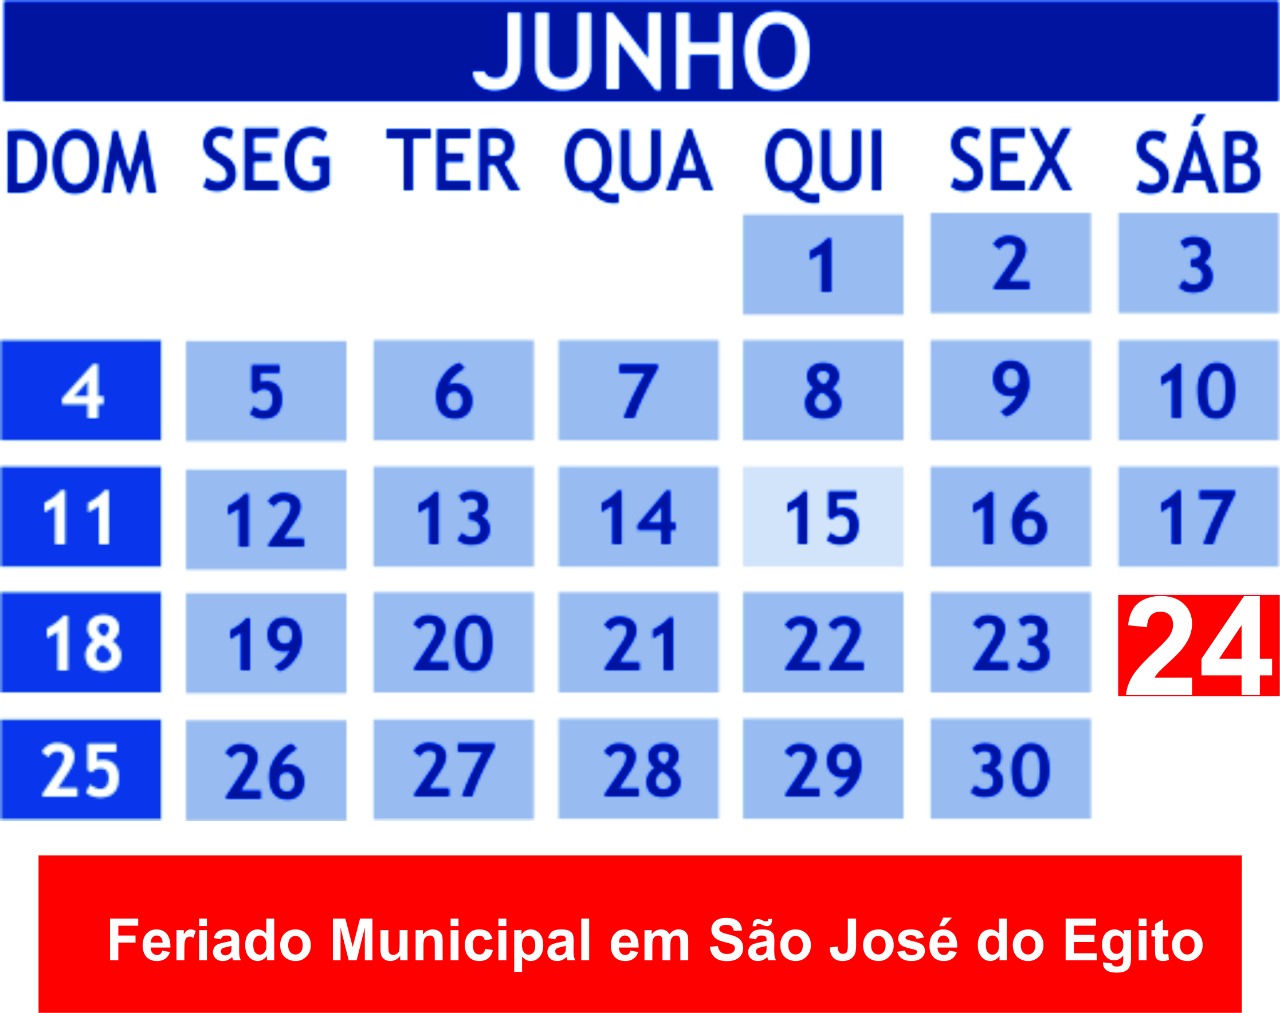 Sábado (24), dia de São João, será feriado em São José